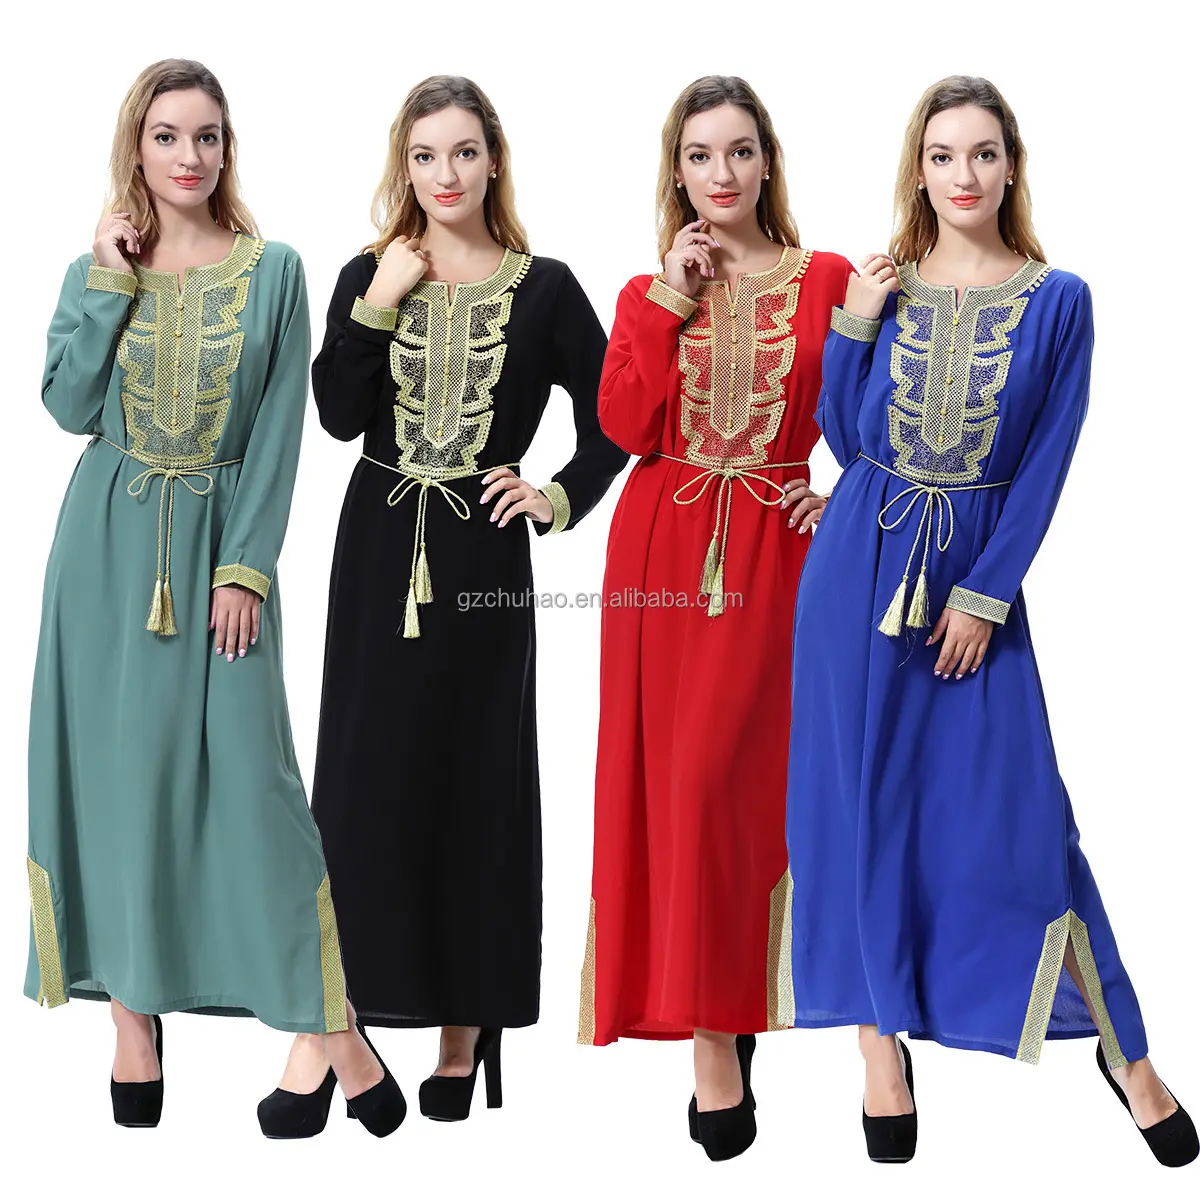 ملابس نسائية جديدة، بدلة إسلامية ماليزية اندونيسية، تنورة عصرية وبلوزة بأكمام طويلة